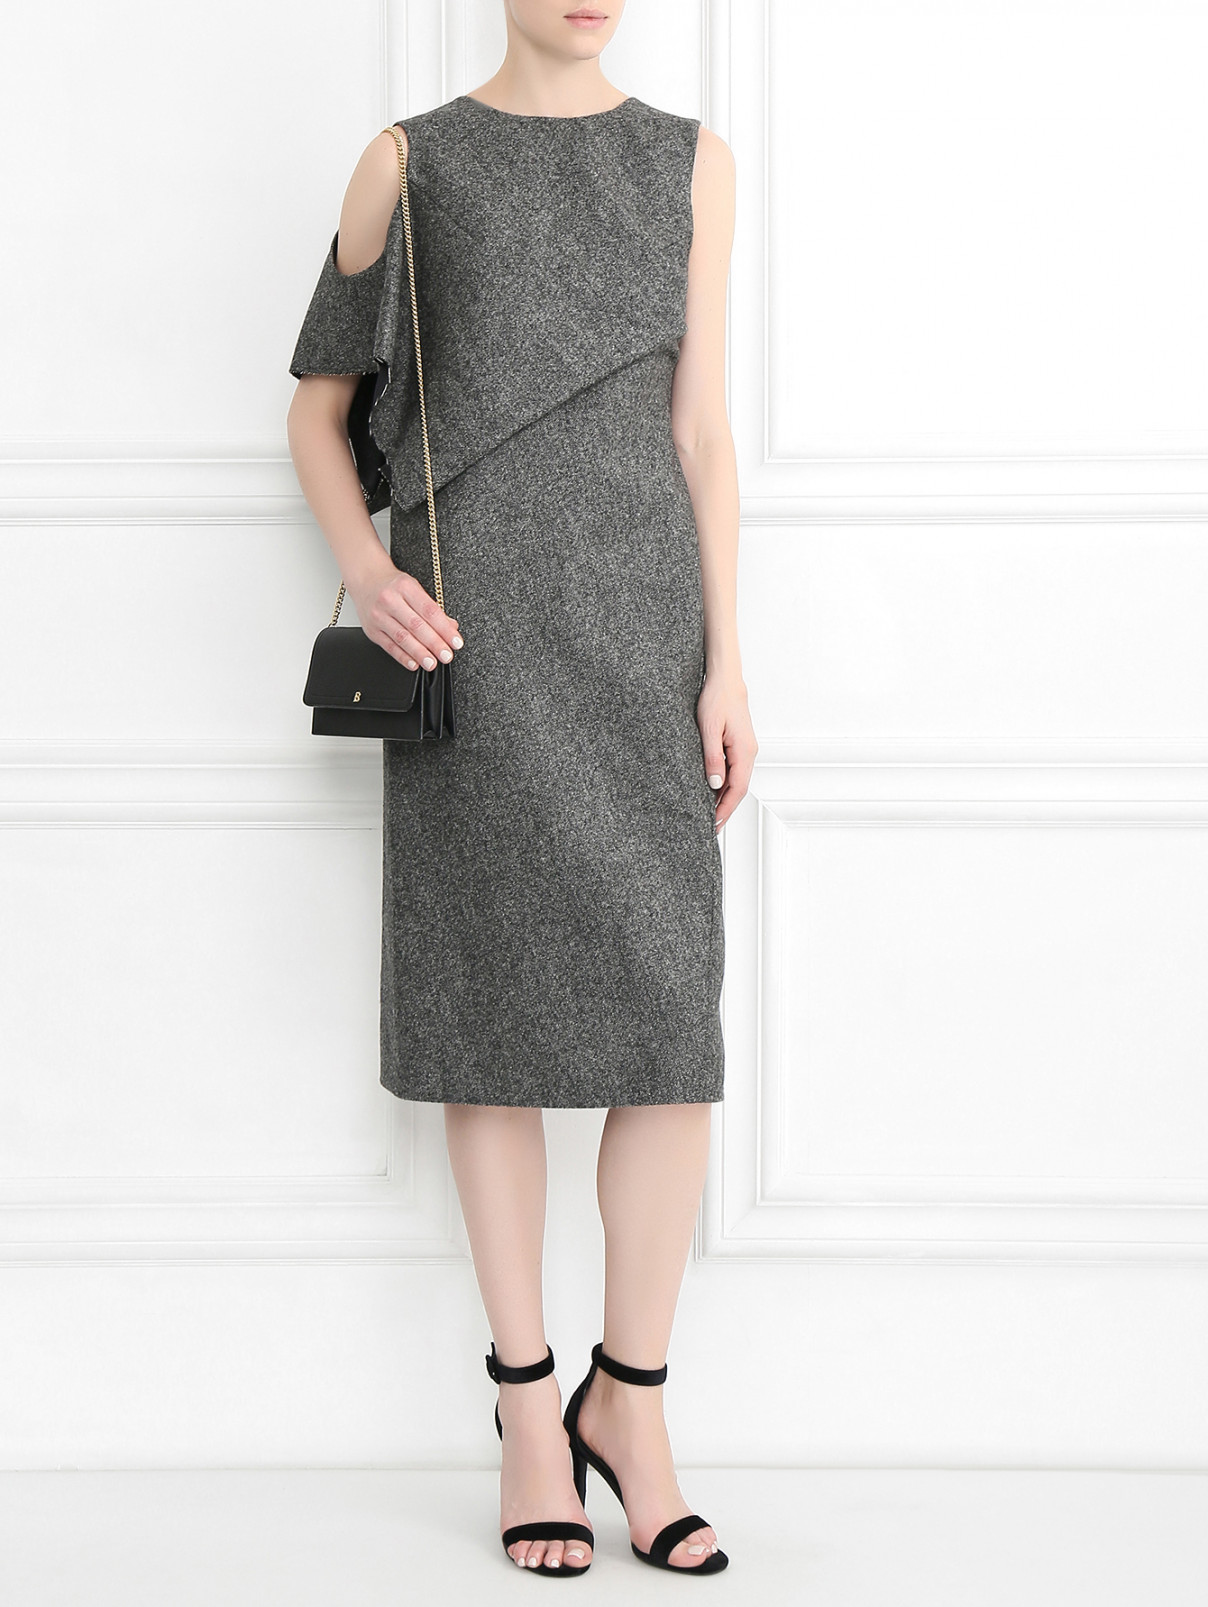 Платье из шерсти асимметричного кроя с драпировкой Maison Margiela  –  Модель Общий вид  – Цвет:  Серый